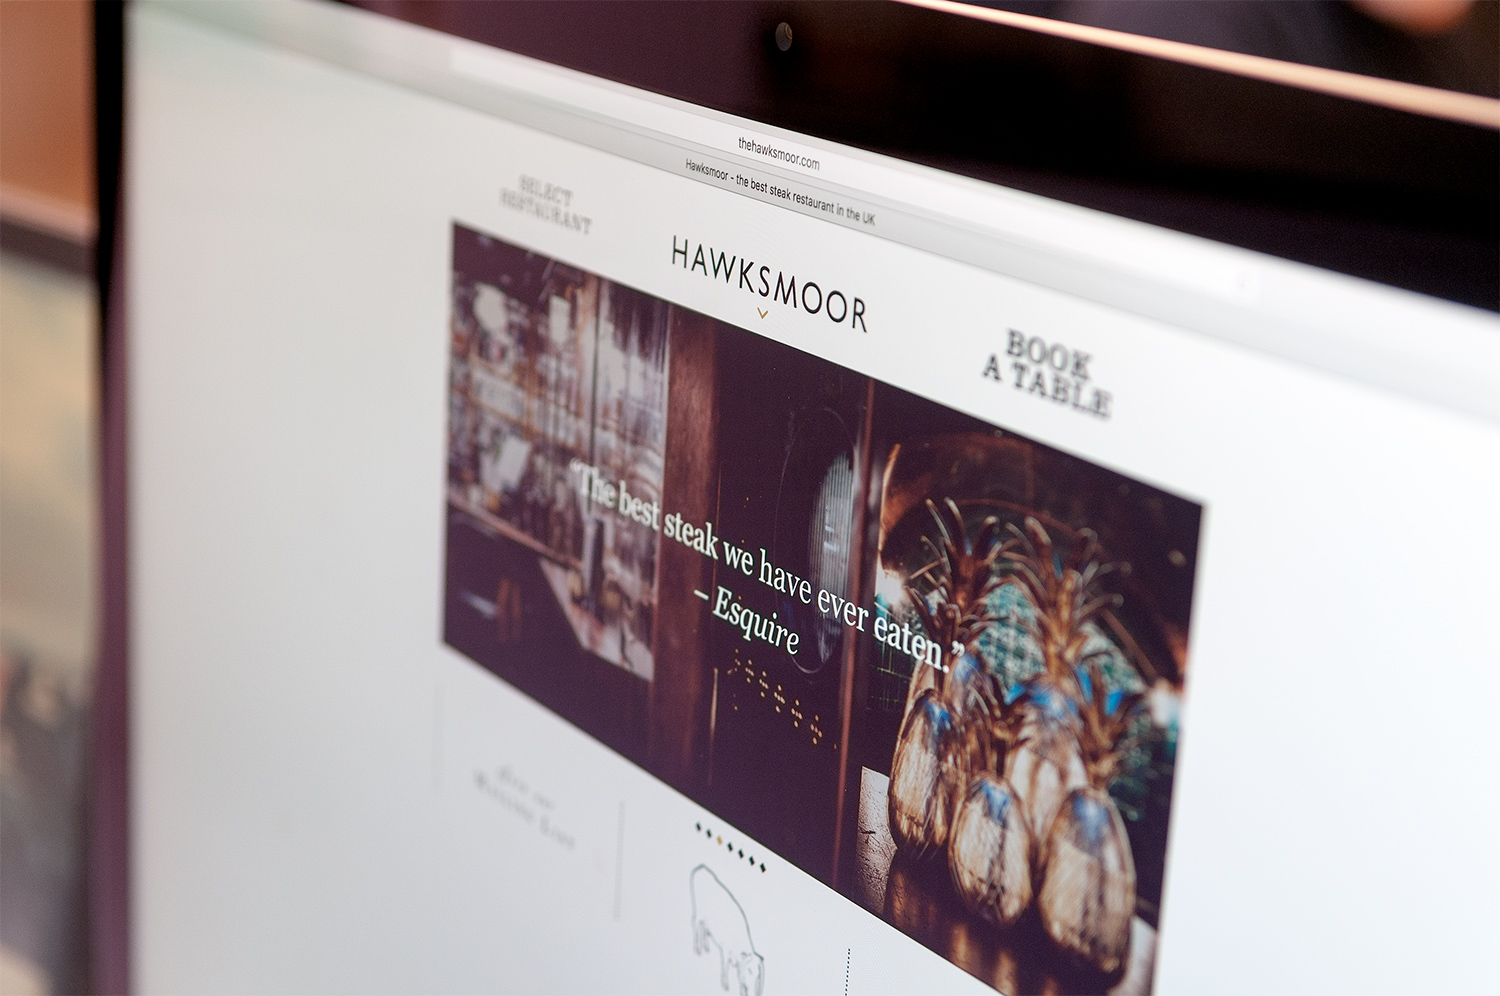 Responsive website for Hawksmoor by Saint Design